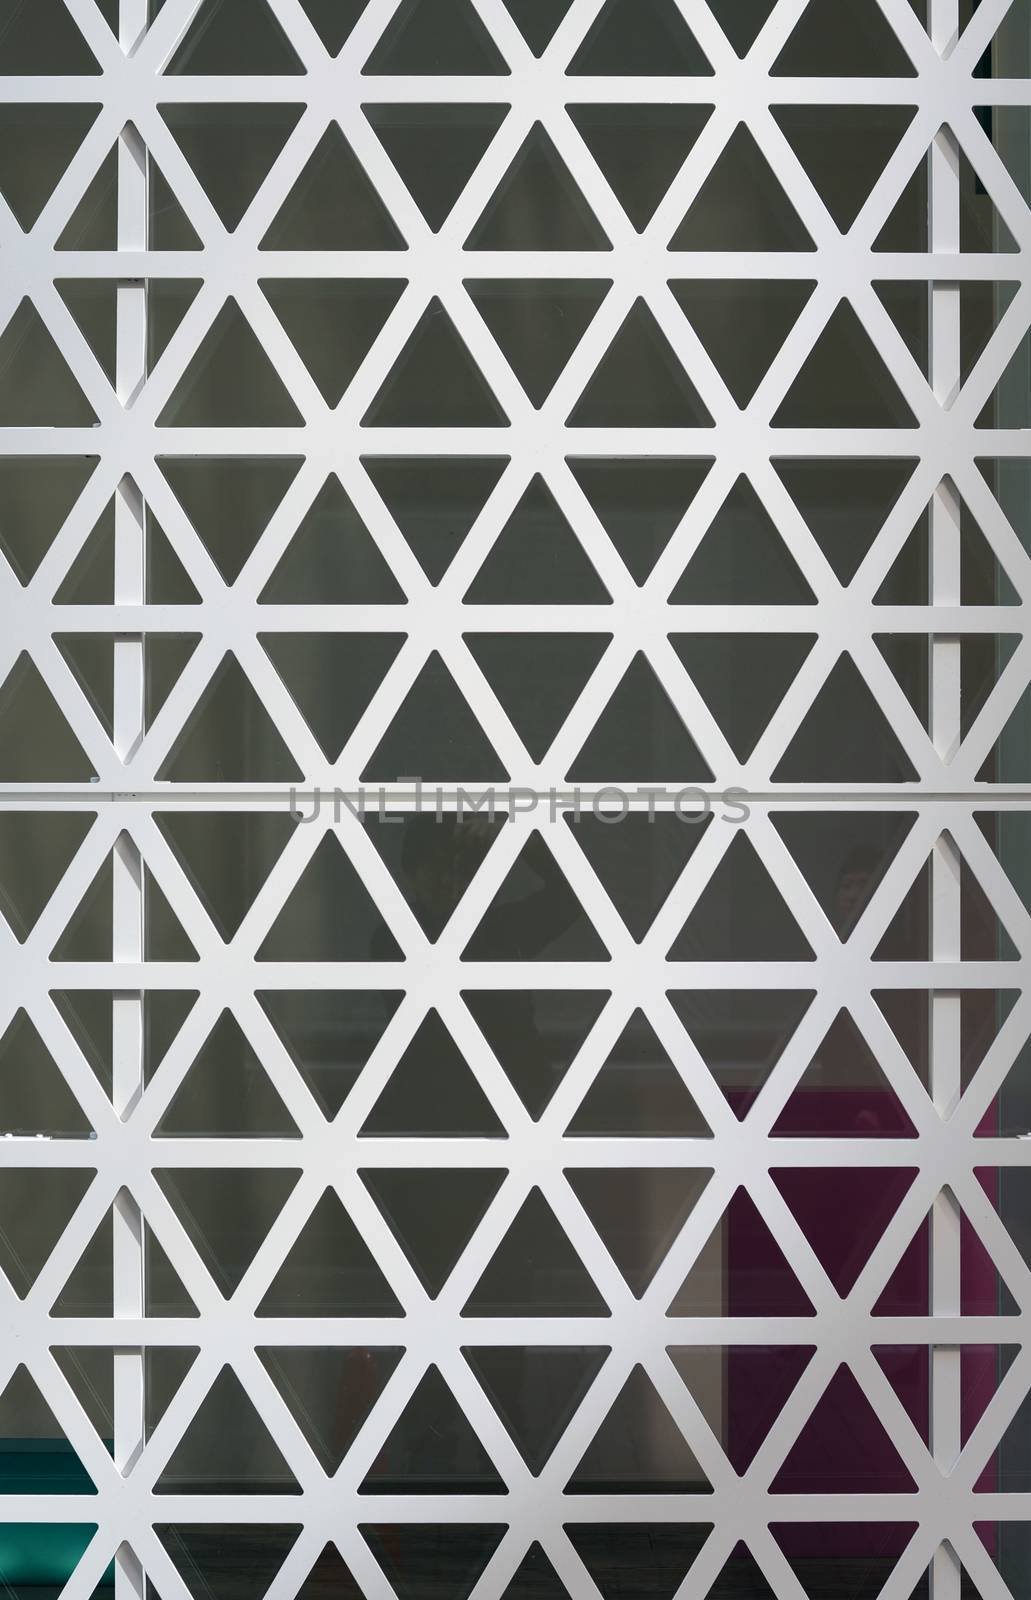 Hexagons steel facade by siraanamwong